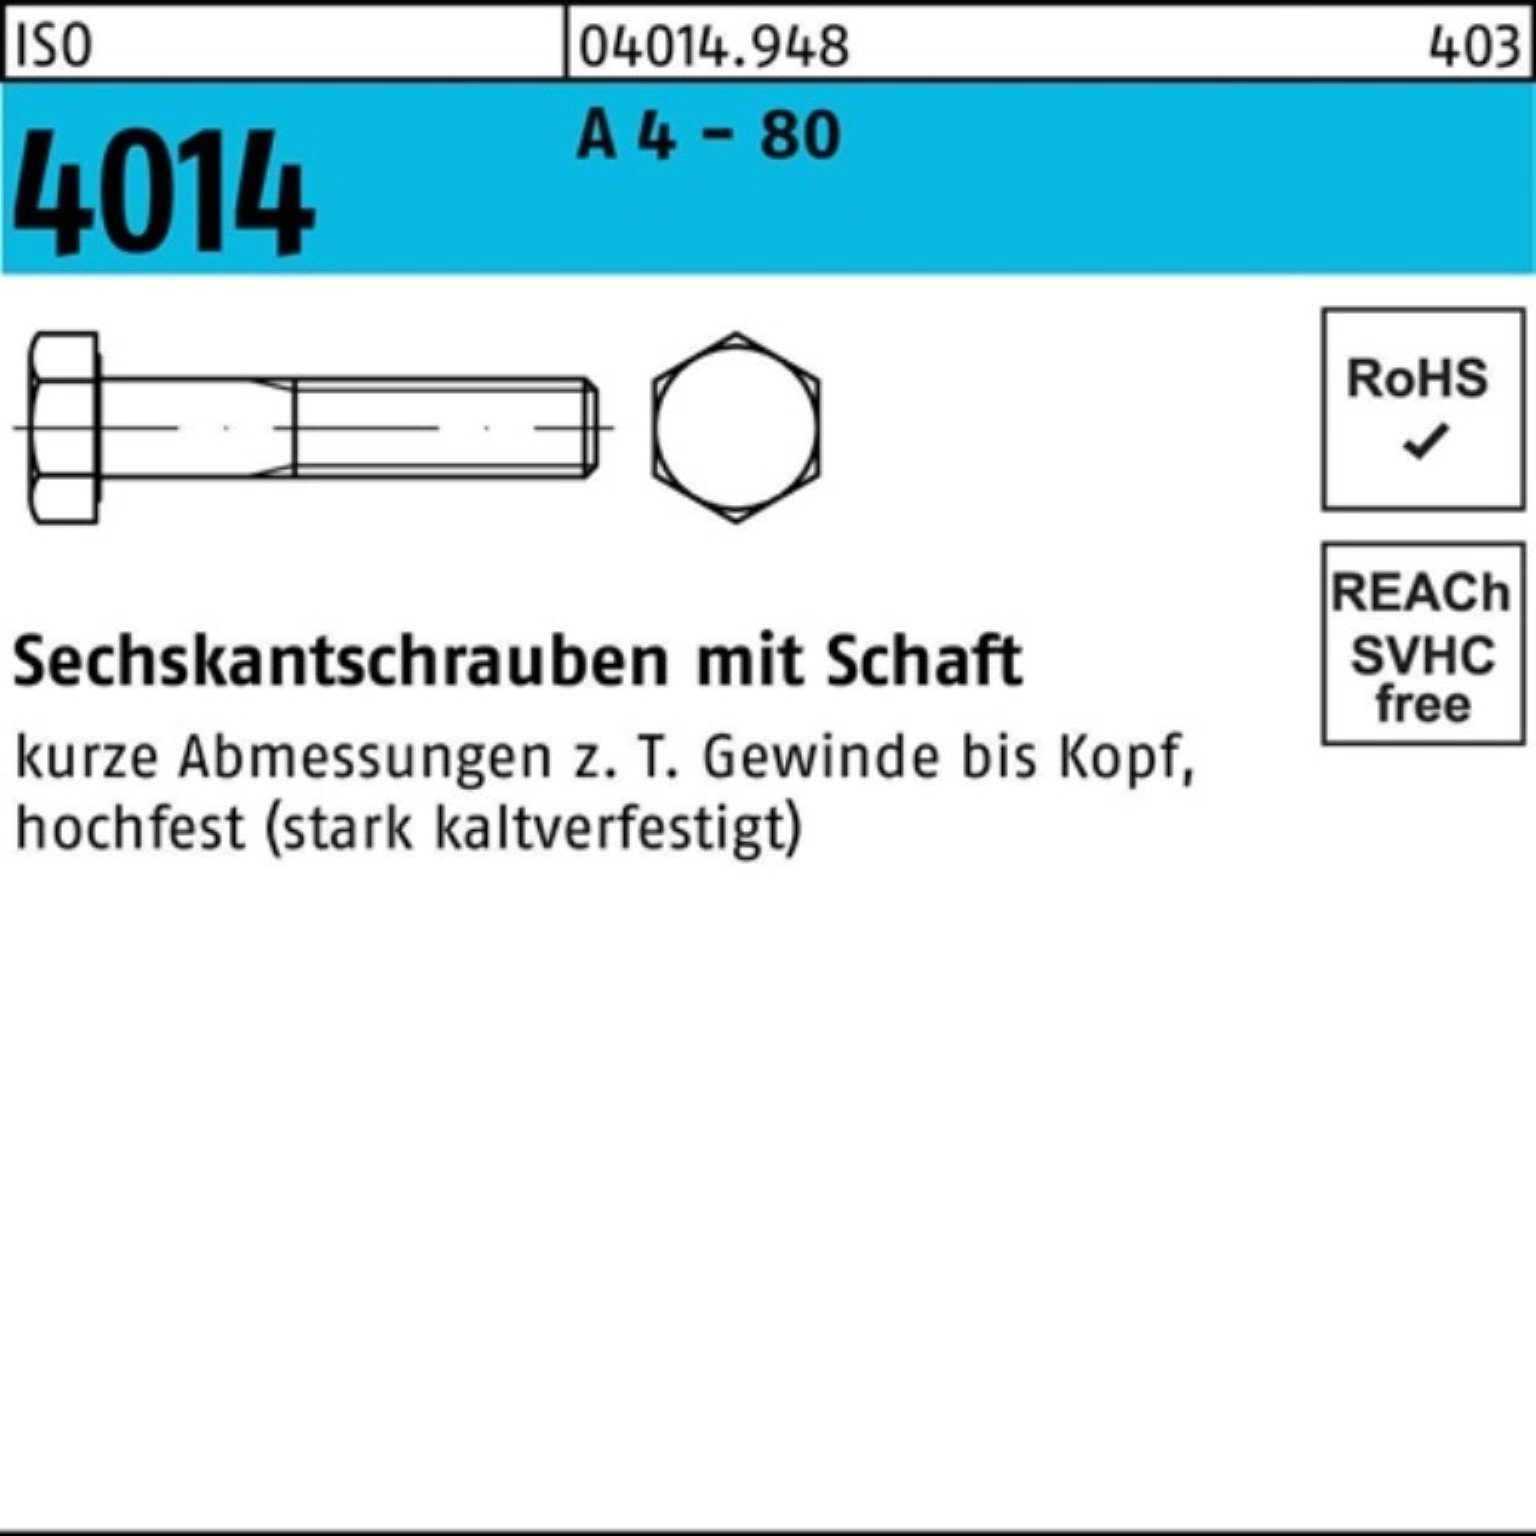 40 Bufab ISO 100 Sechskantschraube Stüc - 4 M6x Pack Schaft 80 A 4014 Sechskantschraube 100er